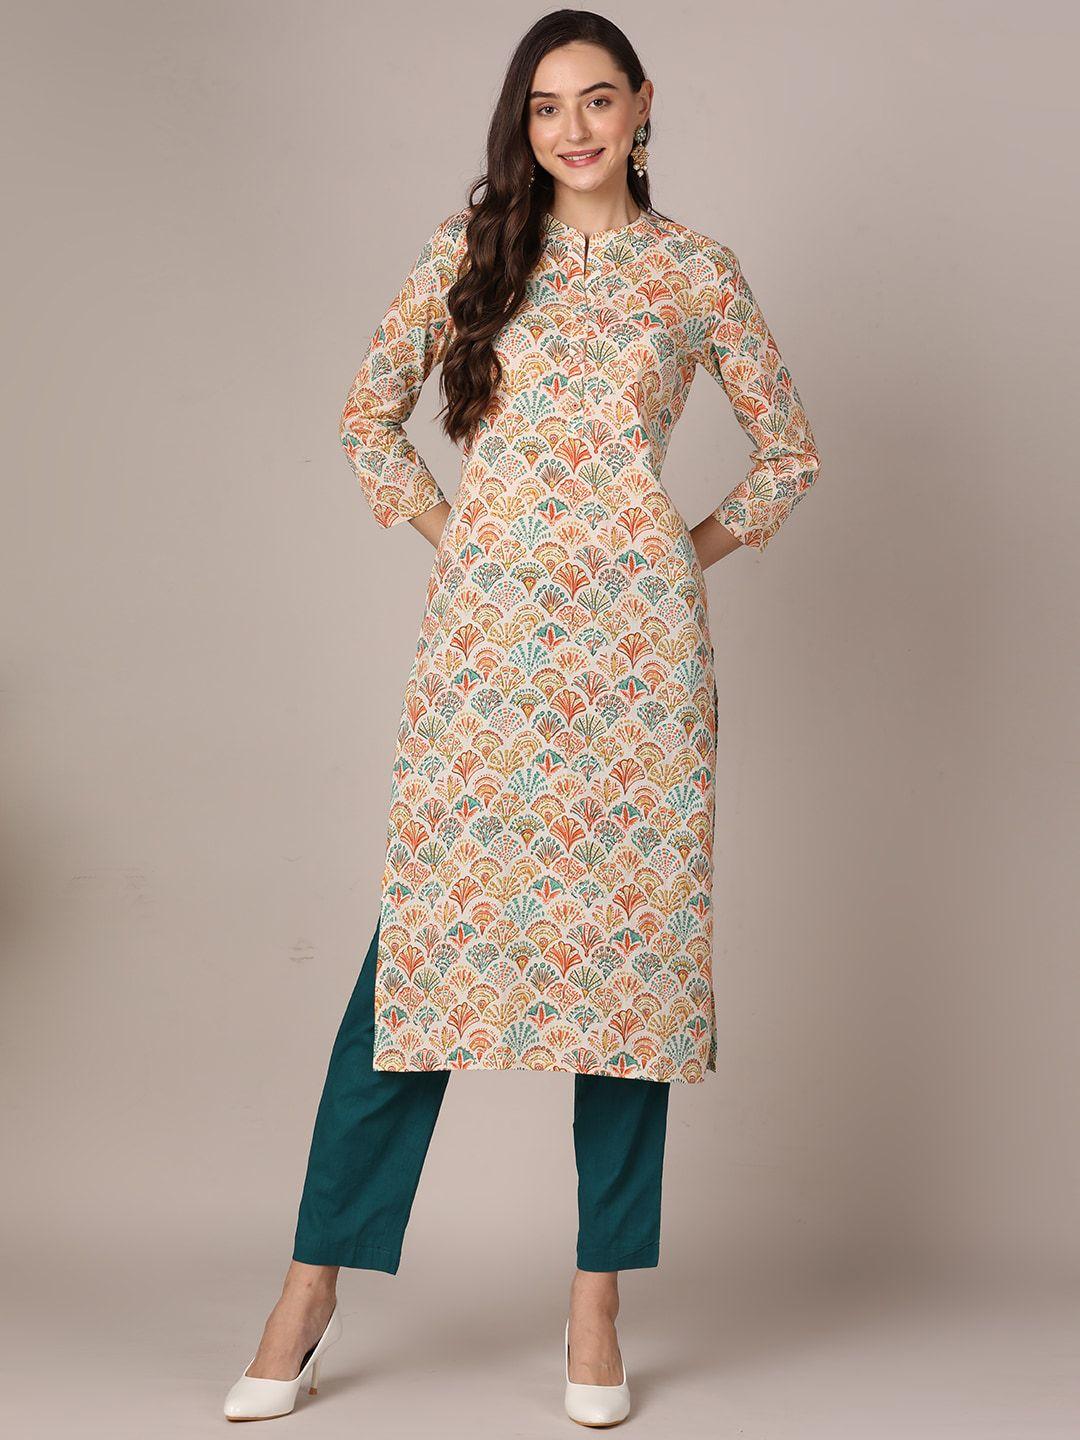 ahika ethnic motif printed mandarin collar cotton straight kurta